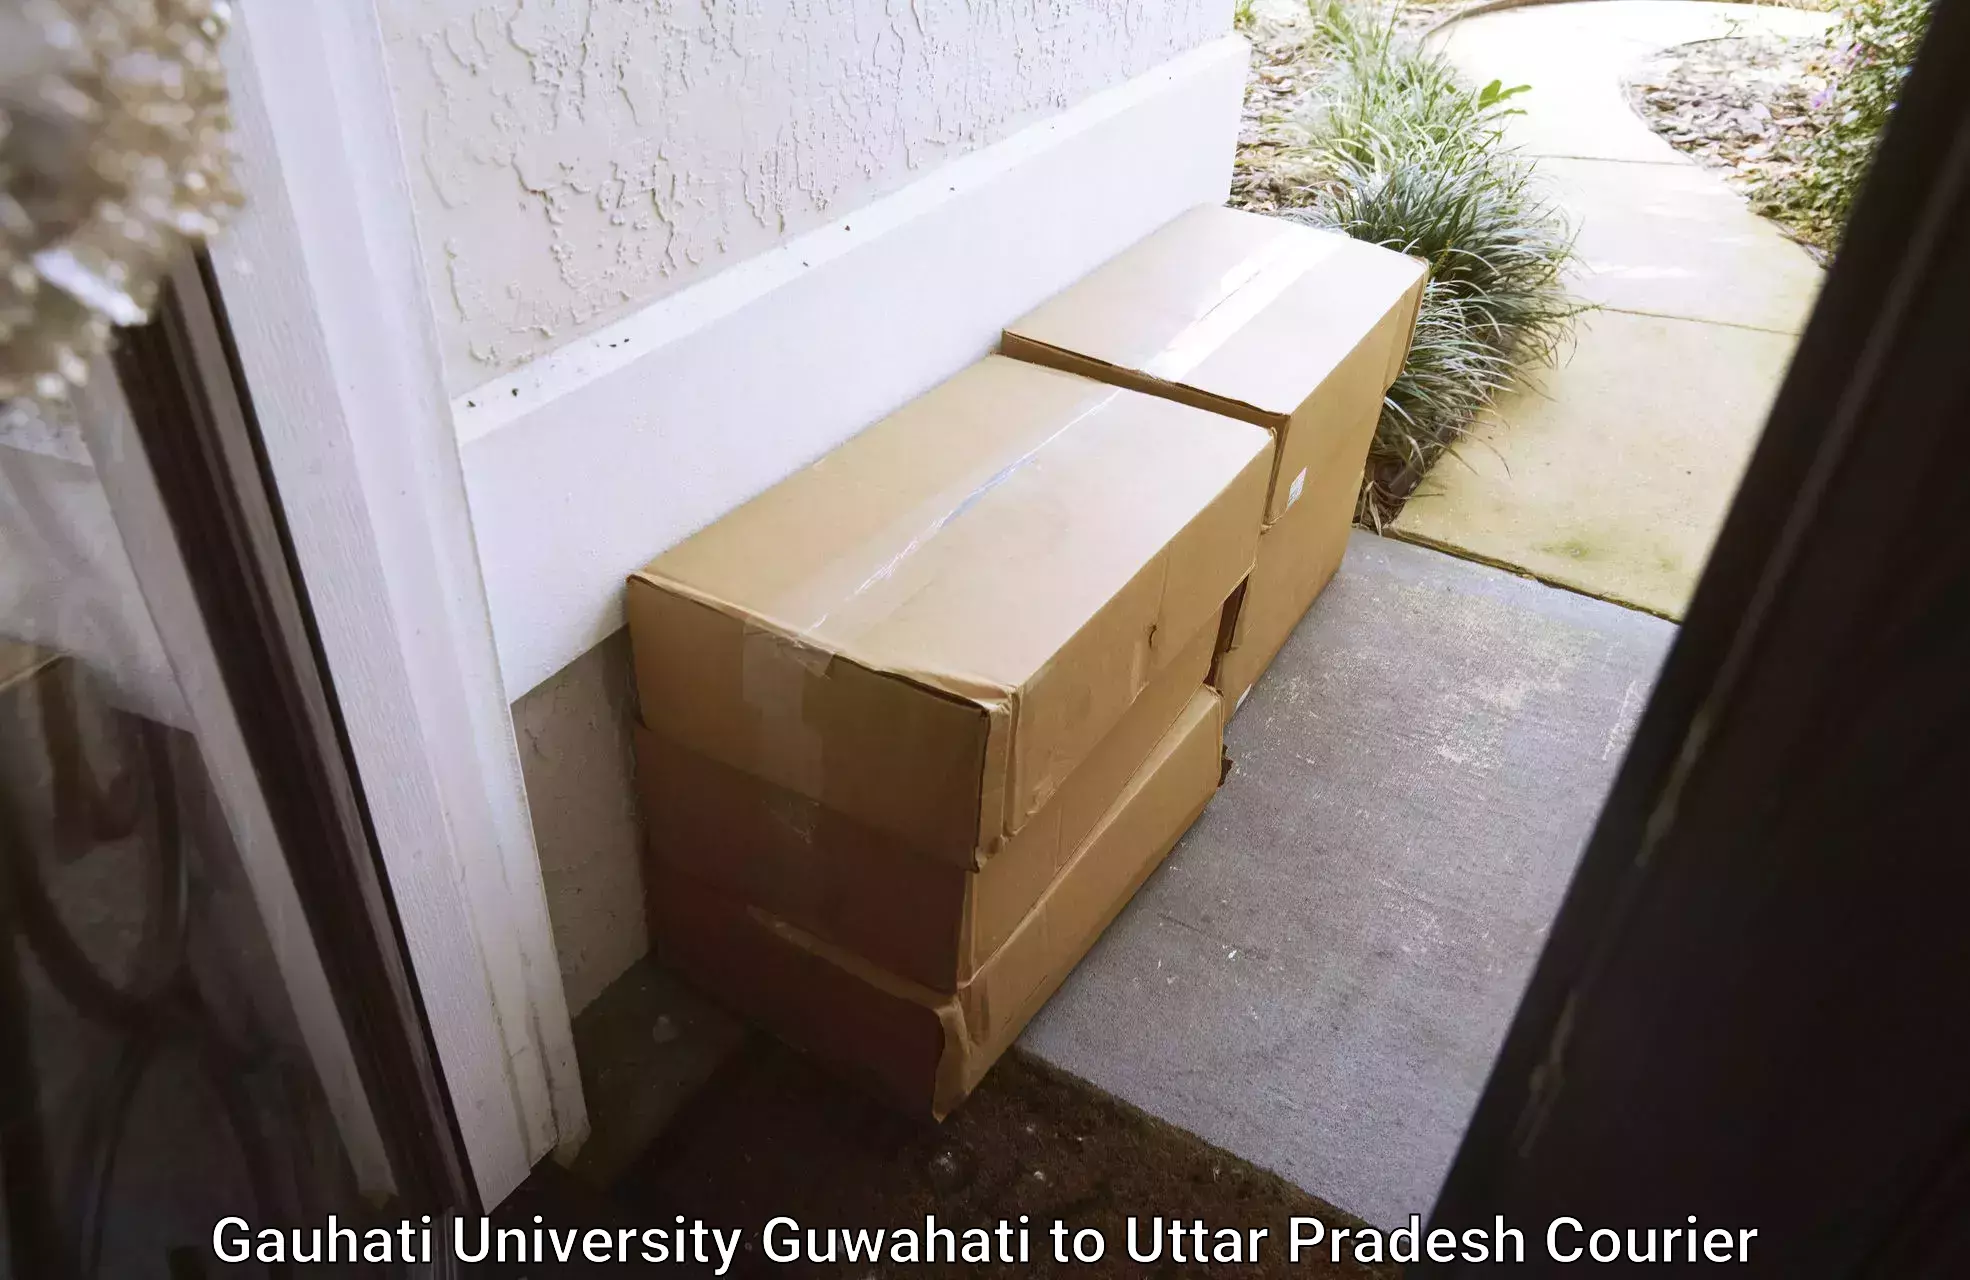 Efficient cargo handling Gauhati University Guwahati to Chandpur